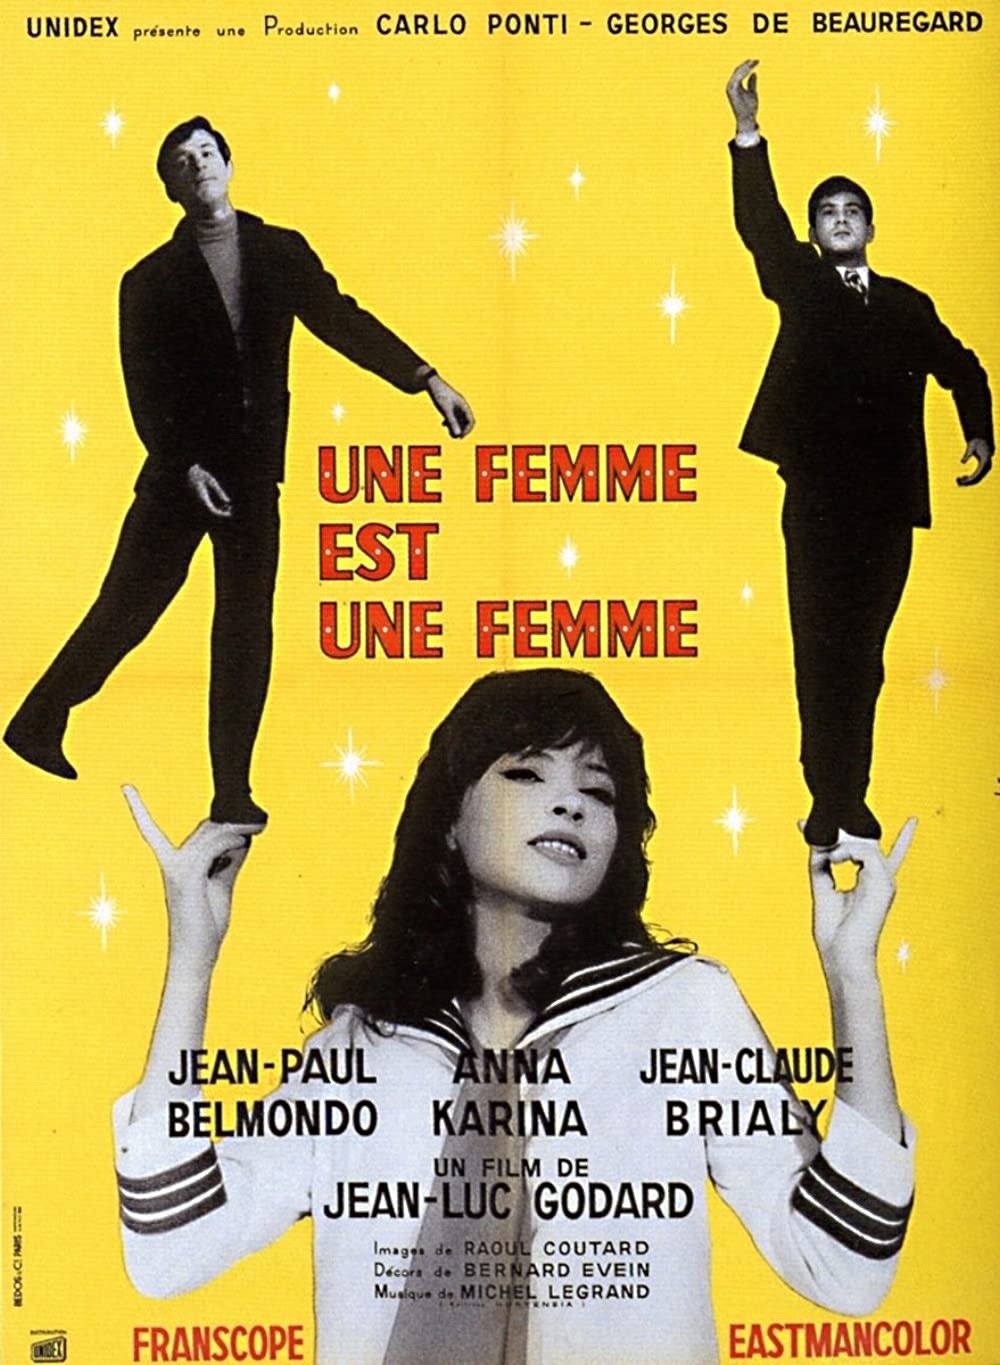 Jean-Luc Godard Films